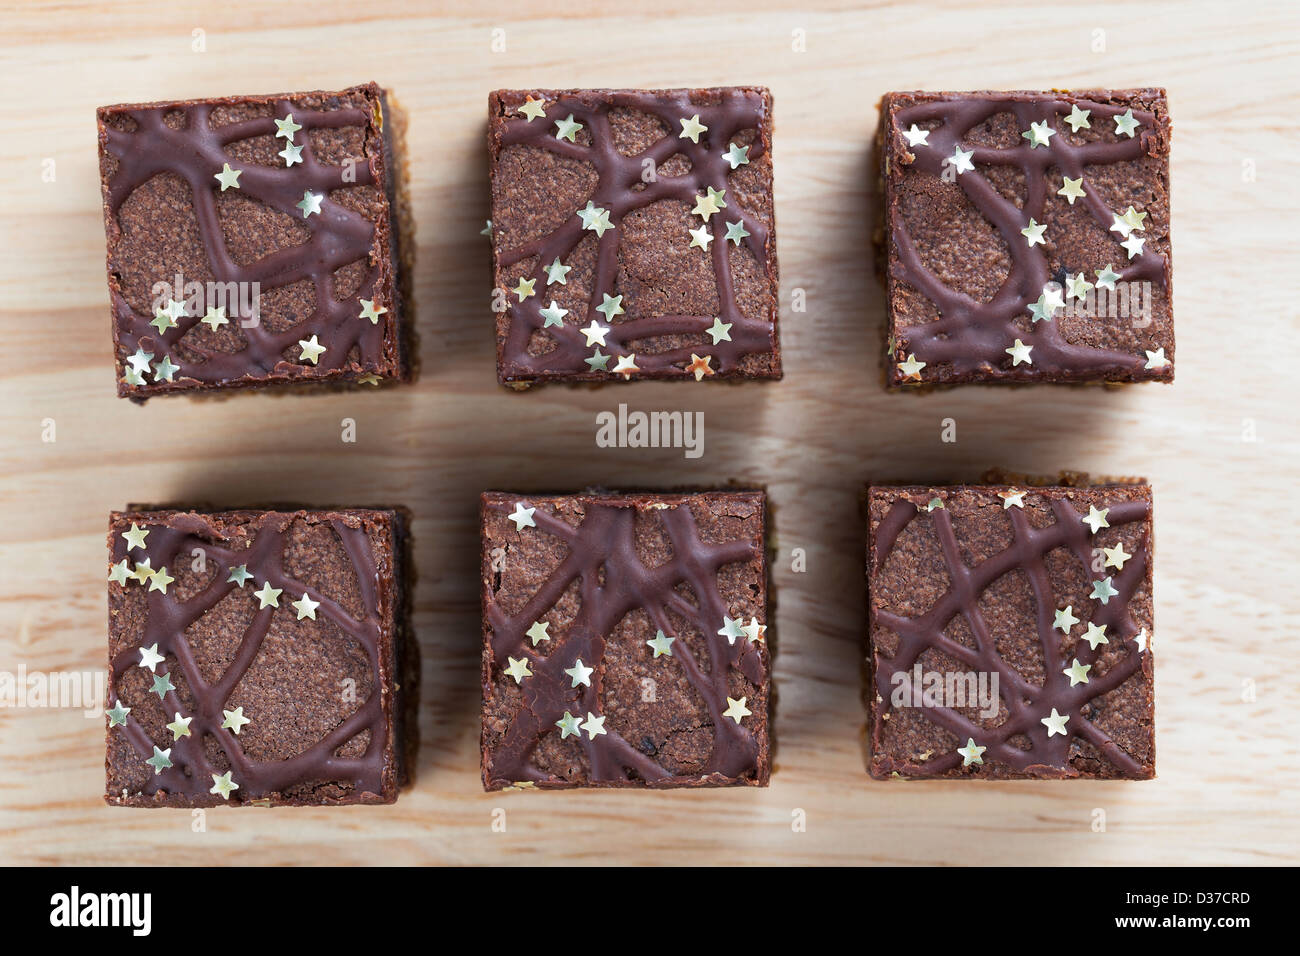 Sechs Schokoladen-Brownies, bestreut mit silbernen Sternen direkt von oben Stockfoto